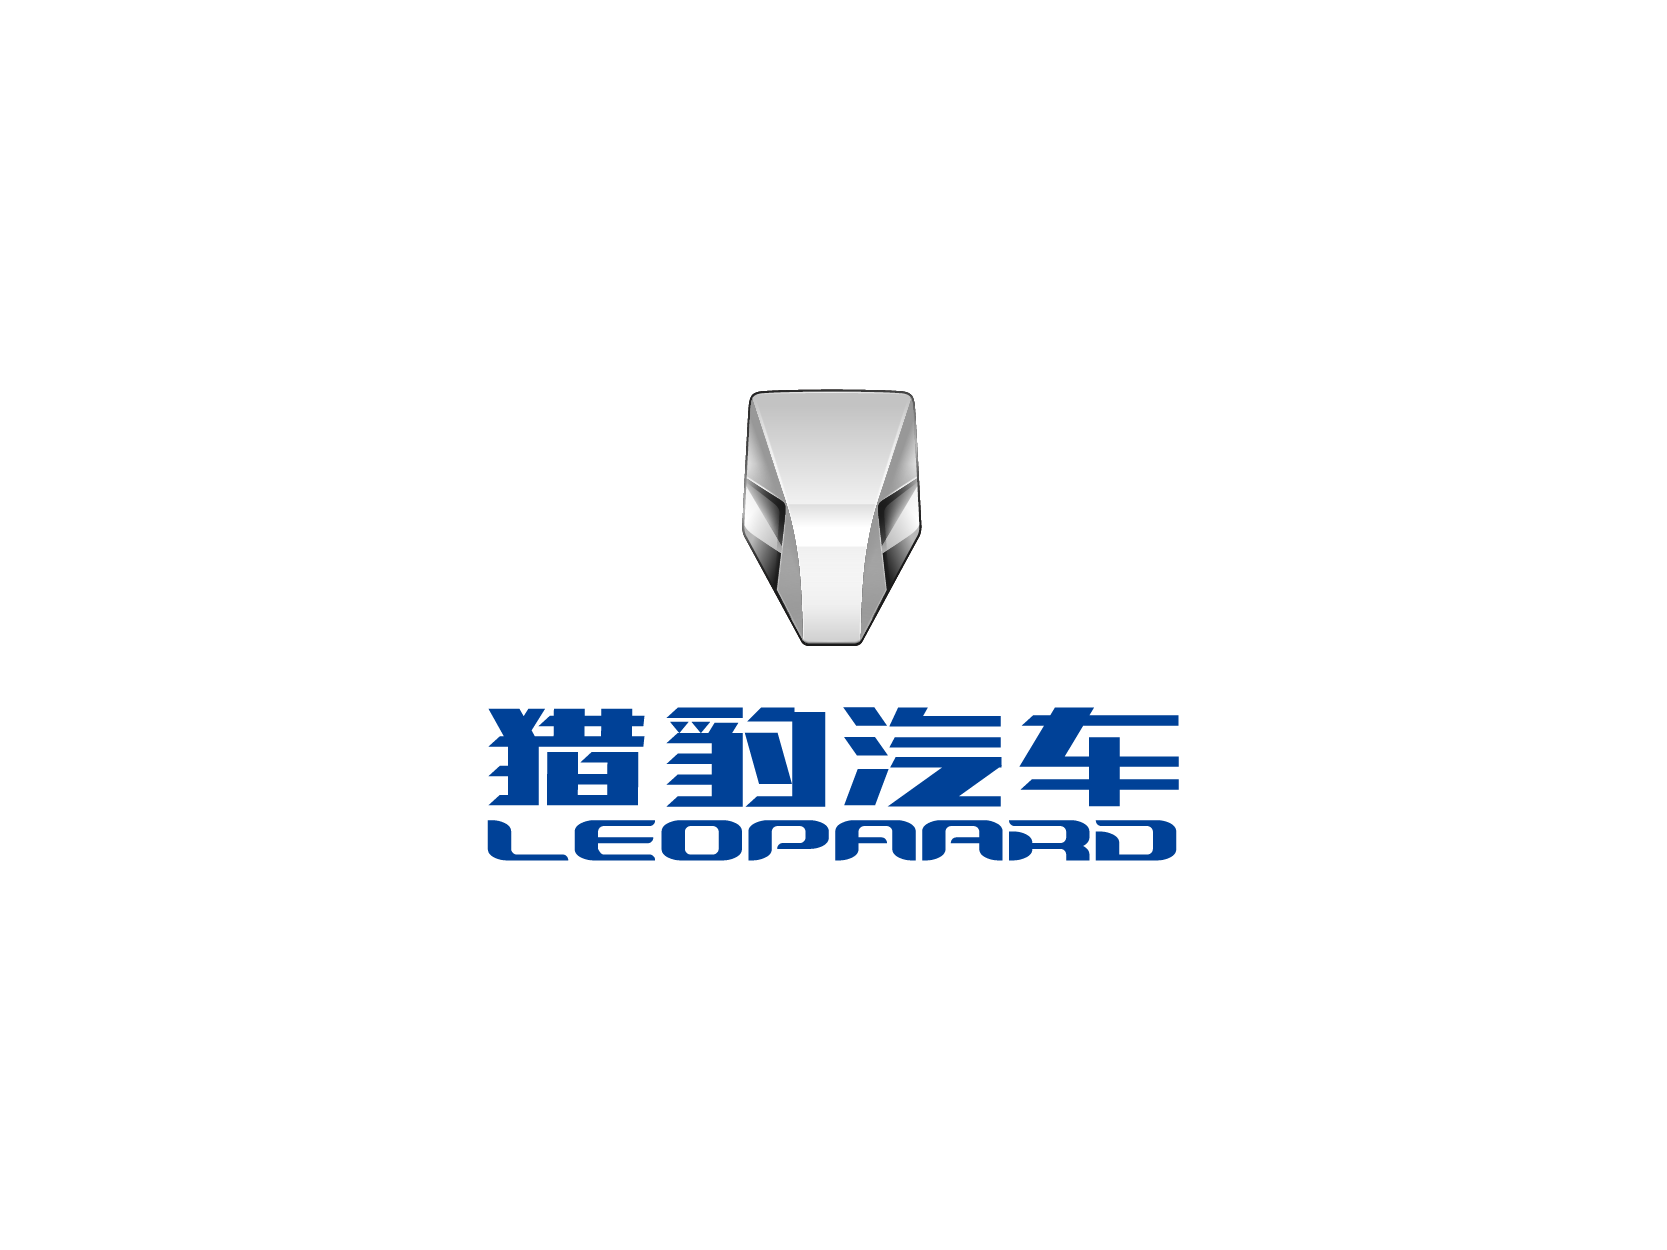 猎豹汽车LEOPAARD标志logo设计